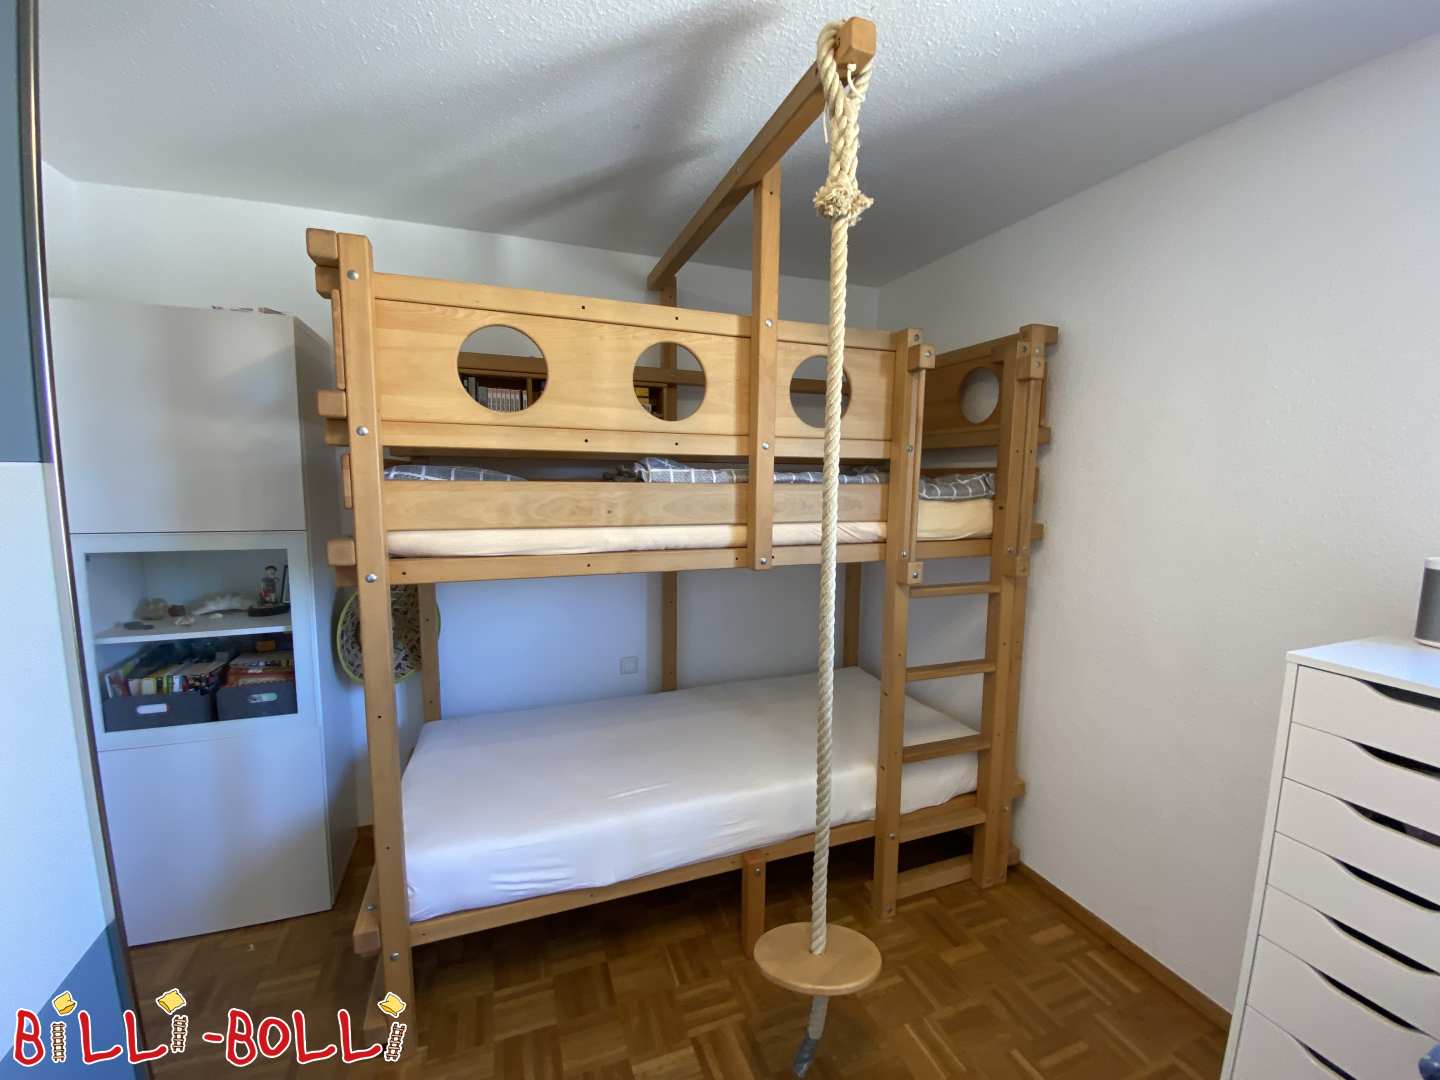 Rostoucí podkrovní postel včetně přestavby na palandu a různých doplňků (Kategorie: Podkrovní postel roste s dítětem použité)